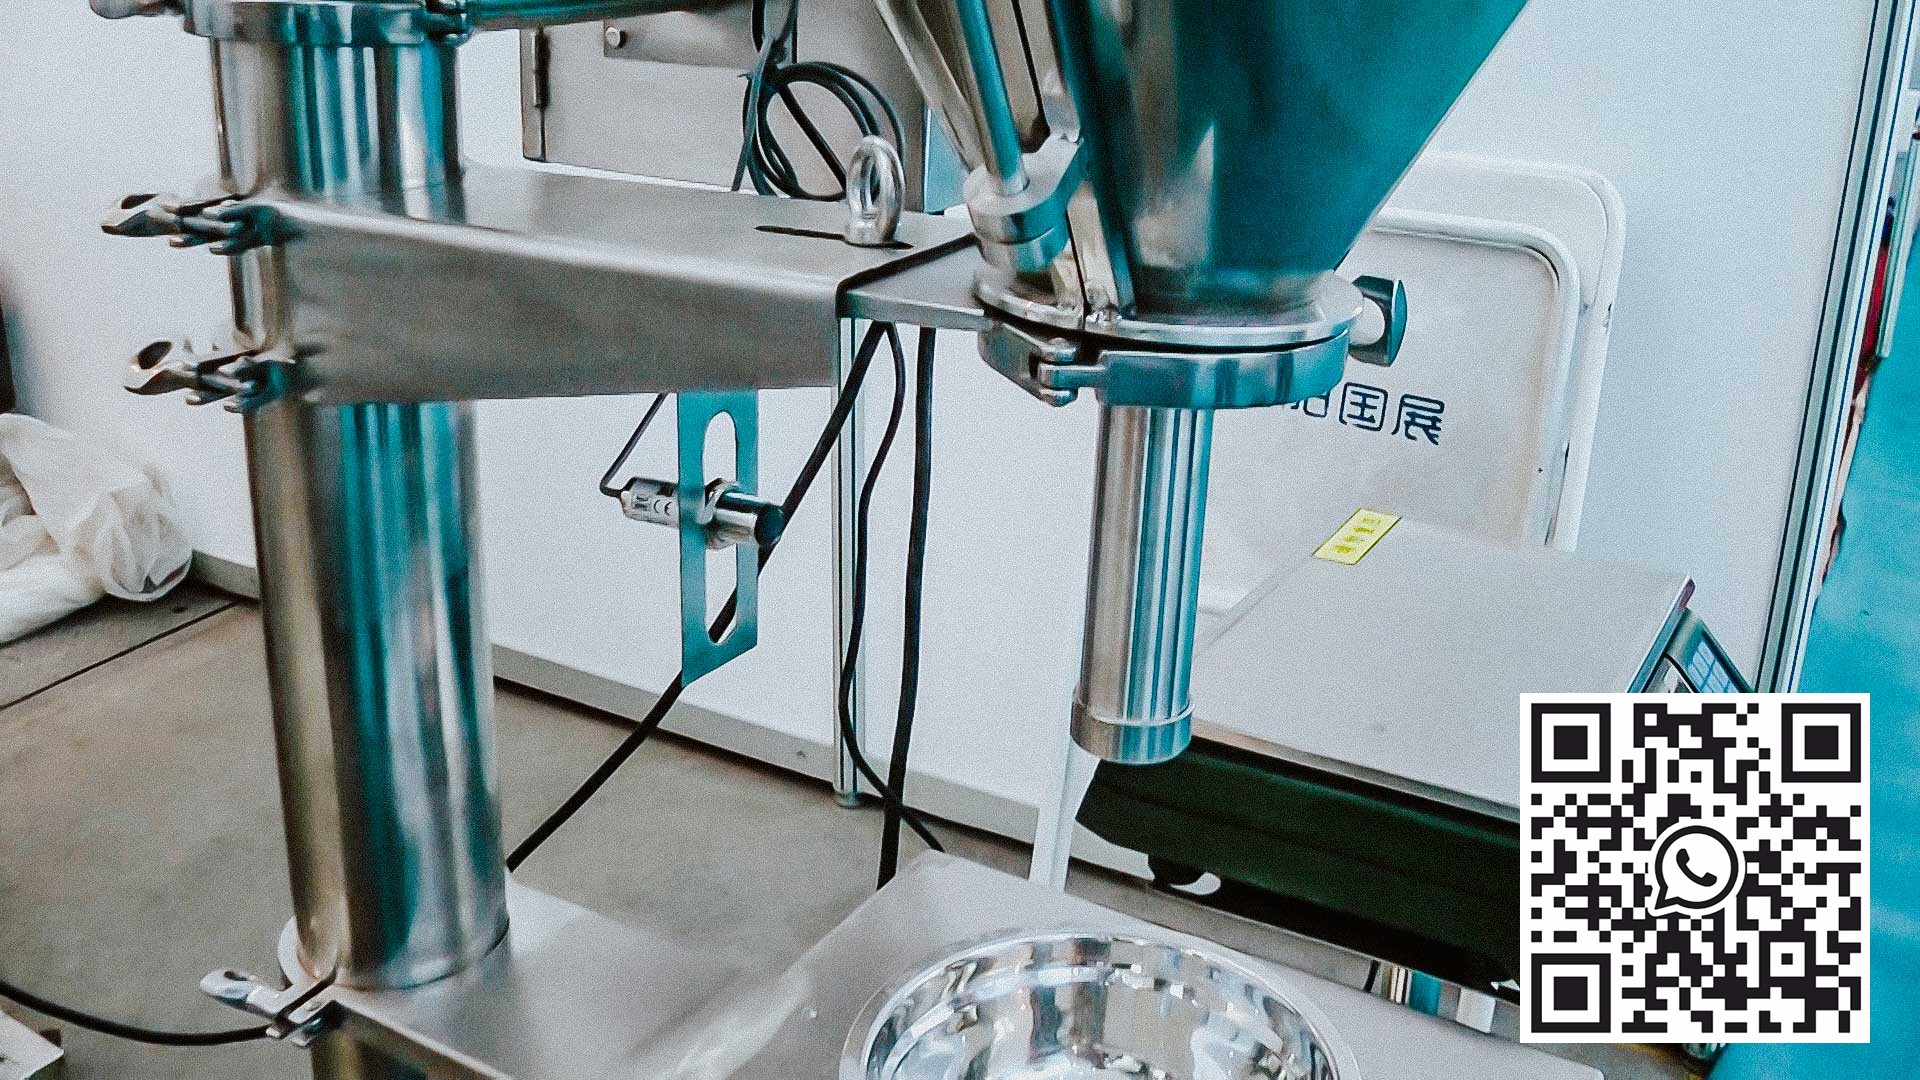 Automatické zařízení pro dávkování prášku podle hmotnosti do plastových lahví